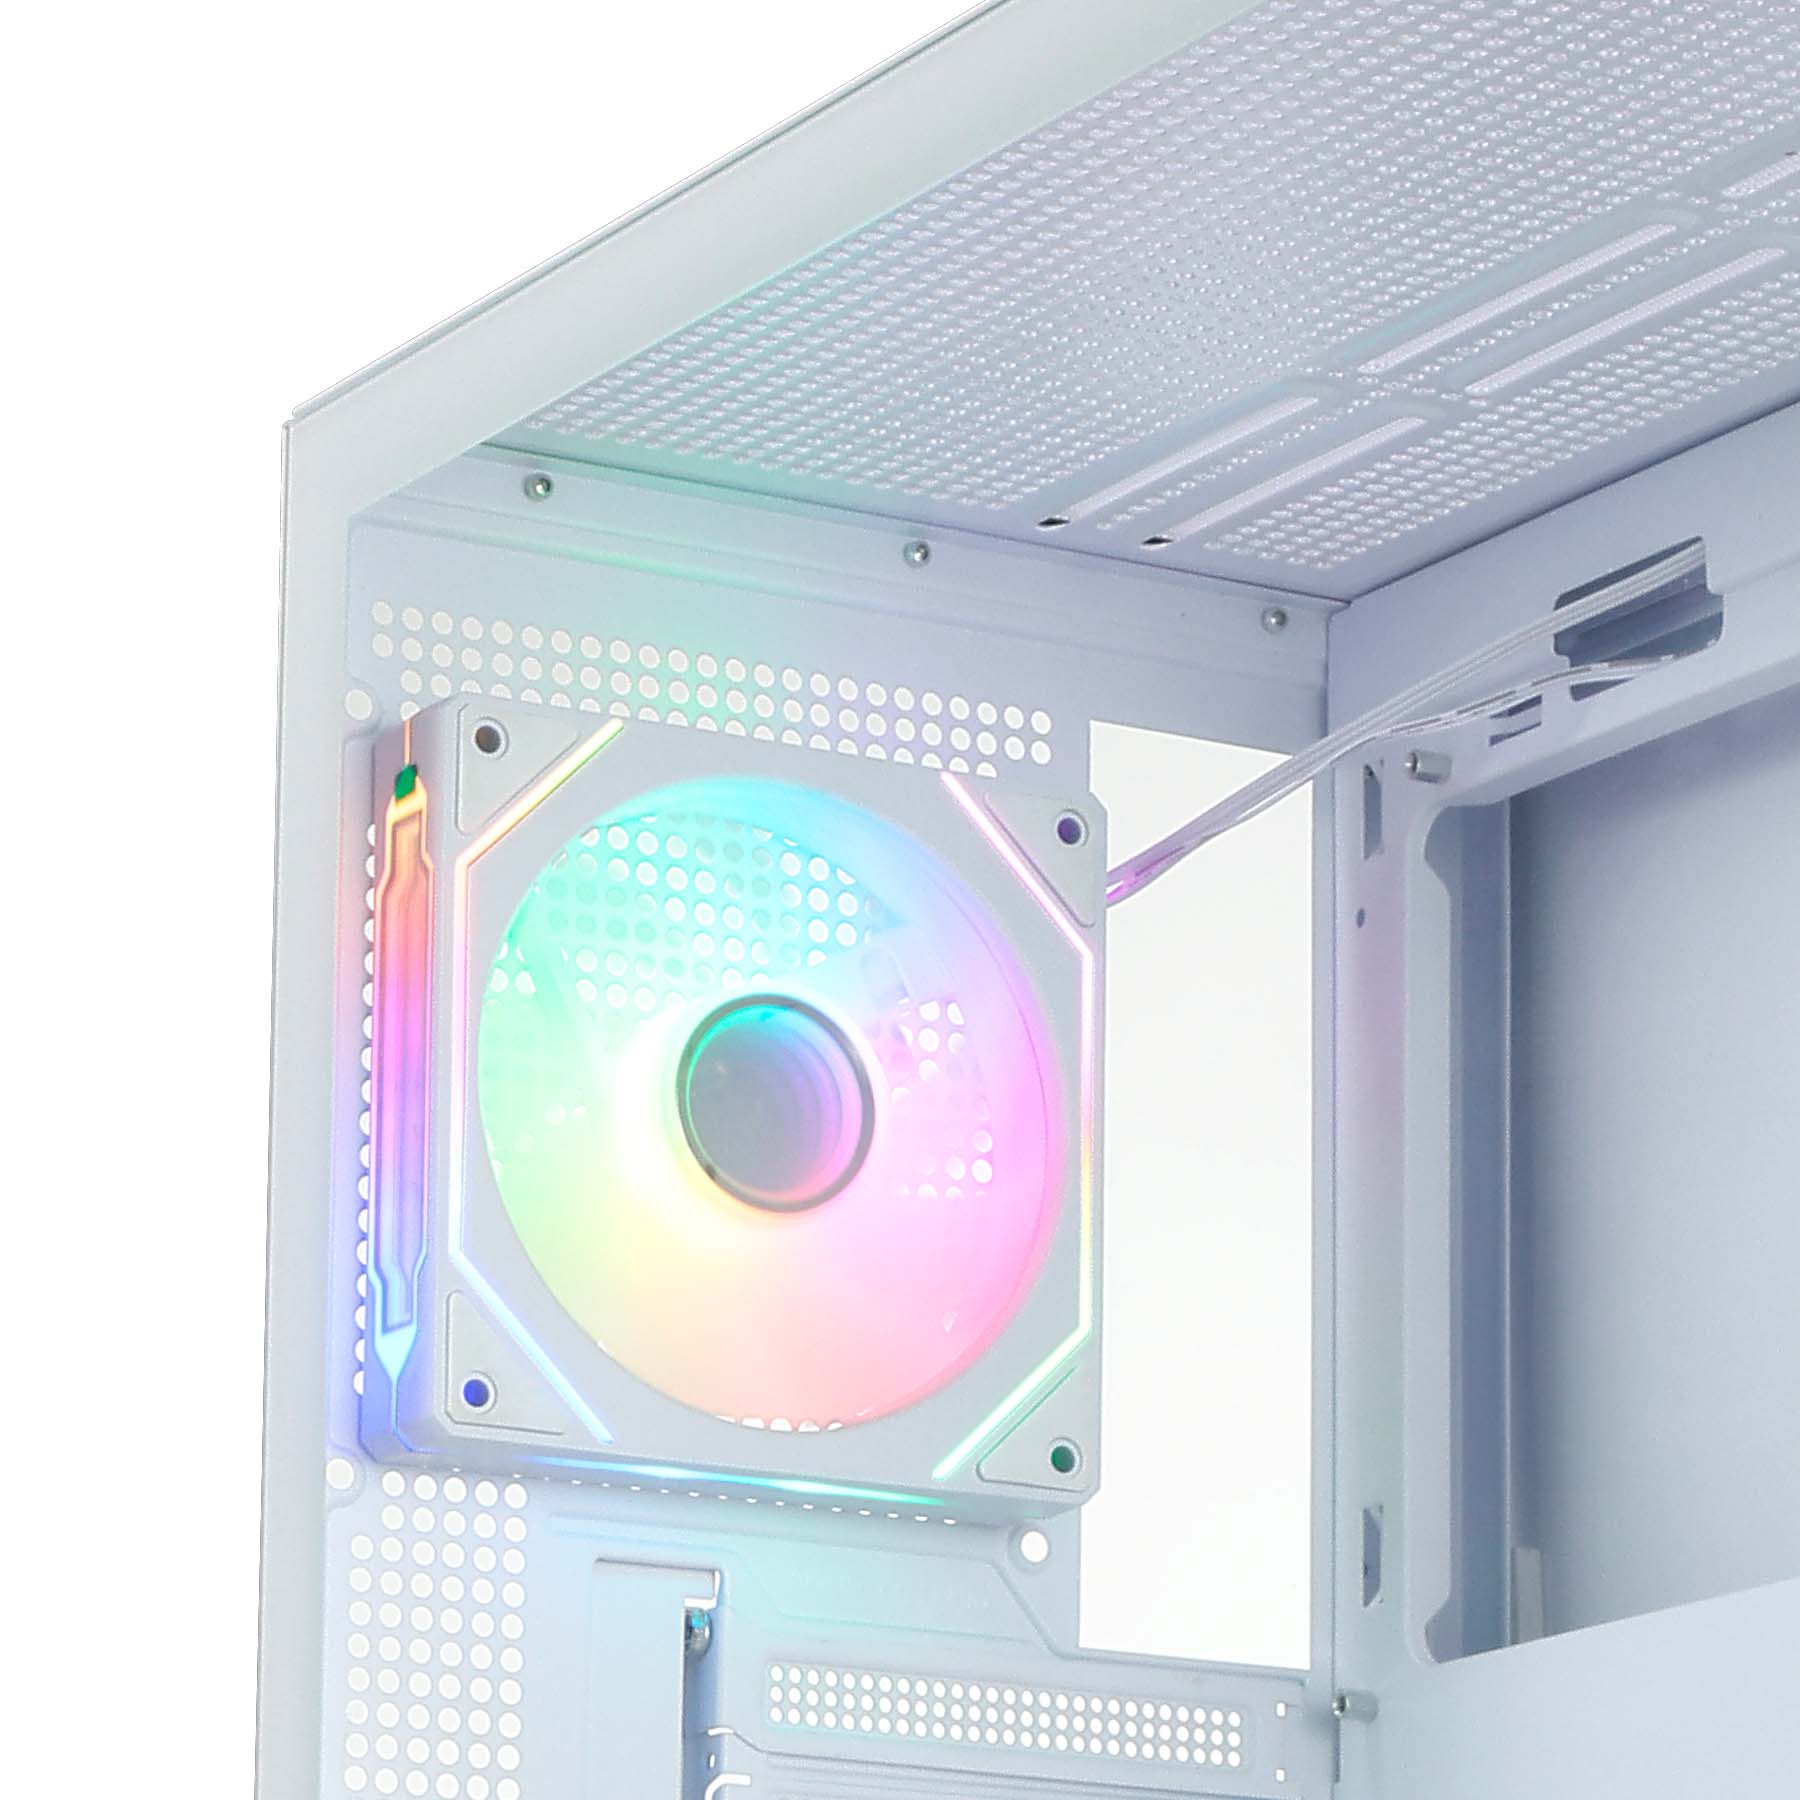 La DANUBE SAVA H400 es una caja gaming de alta calidad que destaca por su amplio espacio interno, perfecto para albergar componentes de alto rendimiento. Con capacidad para tarjetas gráficas de hasta 410 mm de longitud y una altura máxima de refrigeración de la CPU de 180 mm, esta caja te brinda la libertad de elegir los componentes más potentes del mercado.